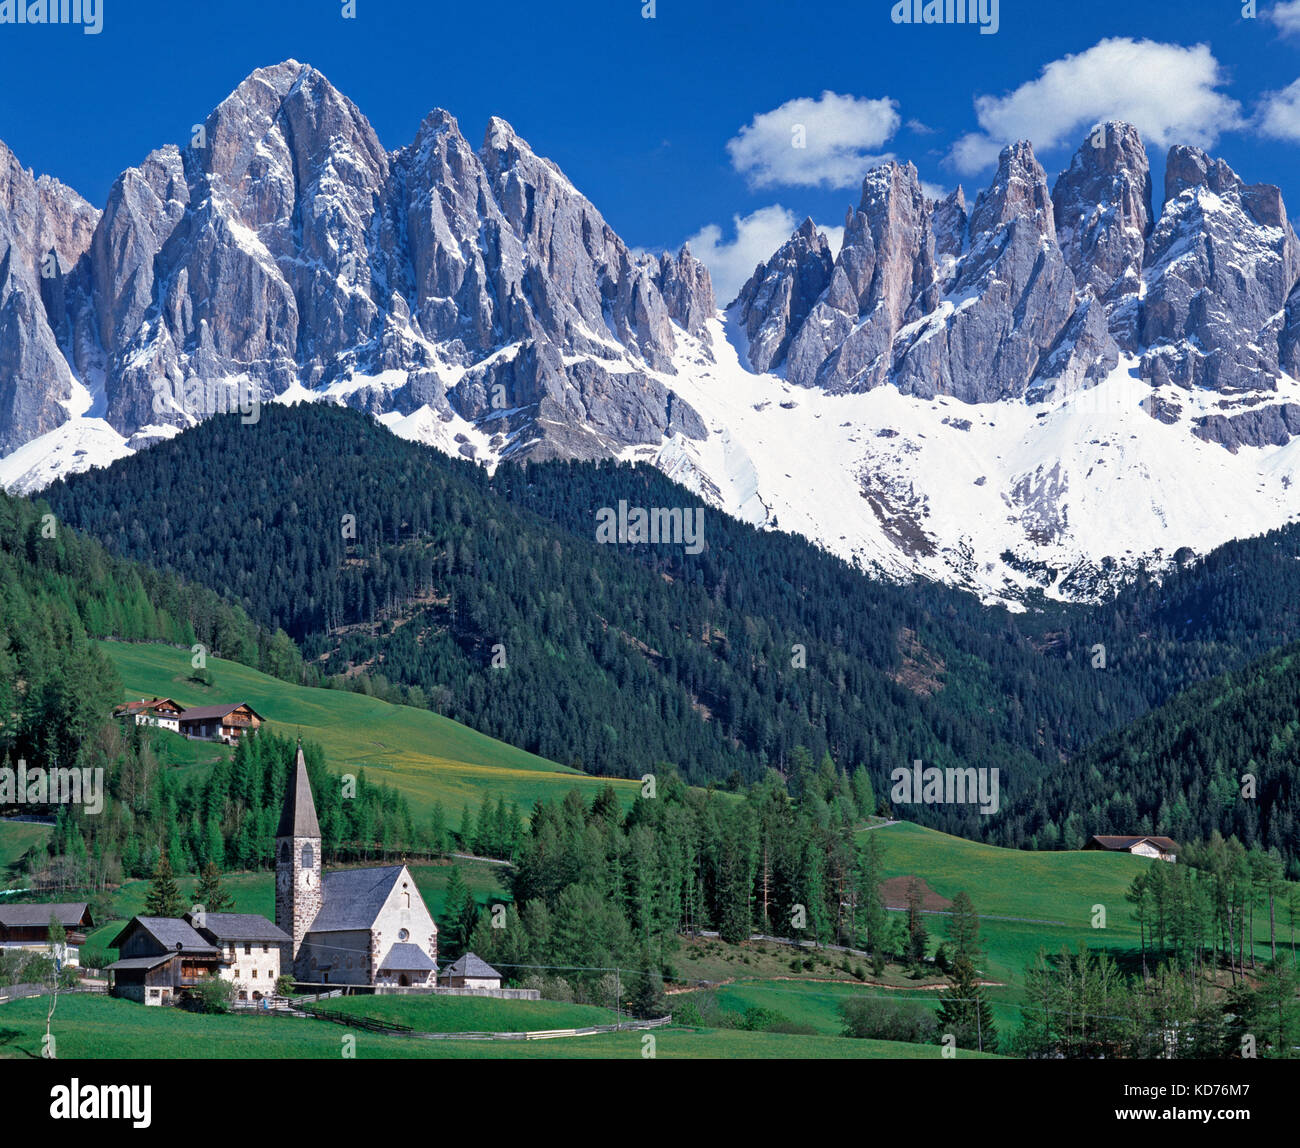 St. magdalena e le Dolomiti, Val di Funes, alto adige, trentino, Italia Foto Stock